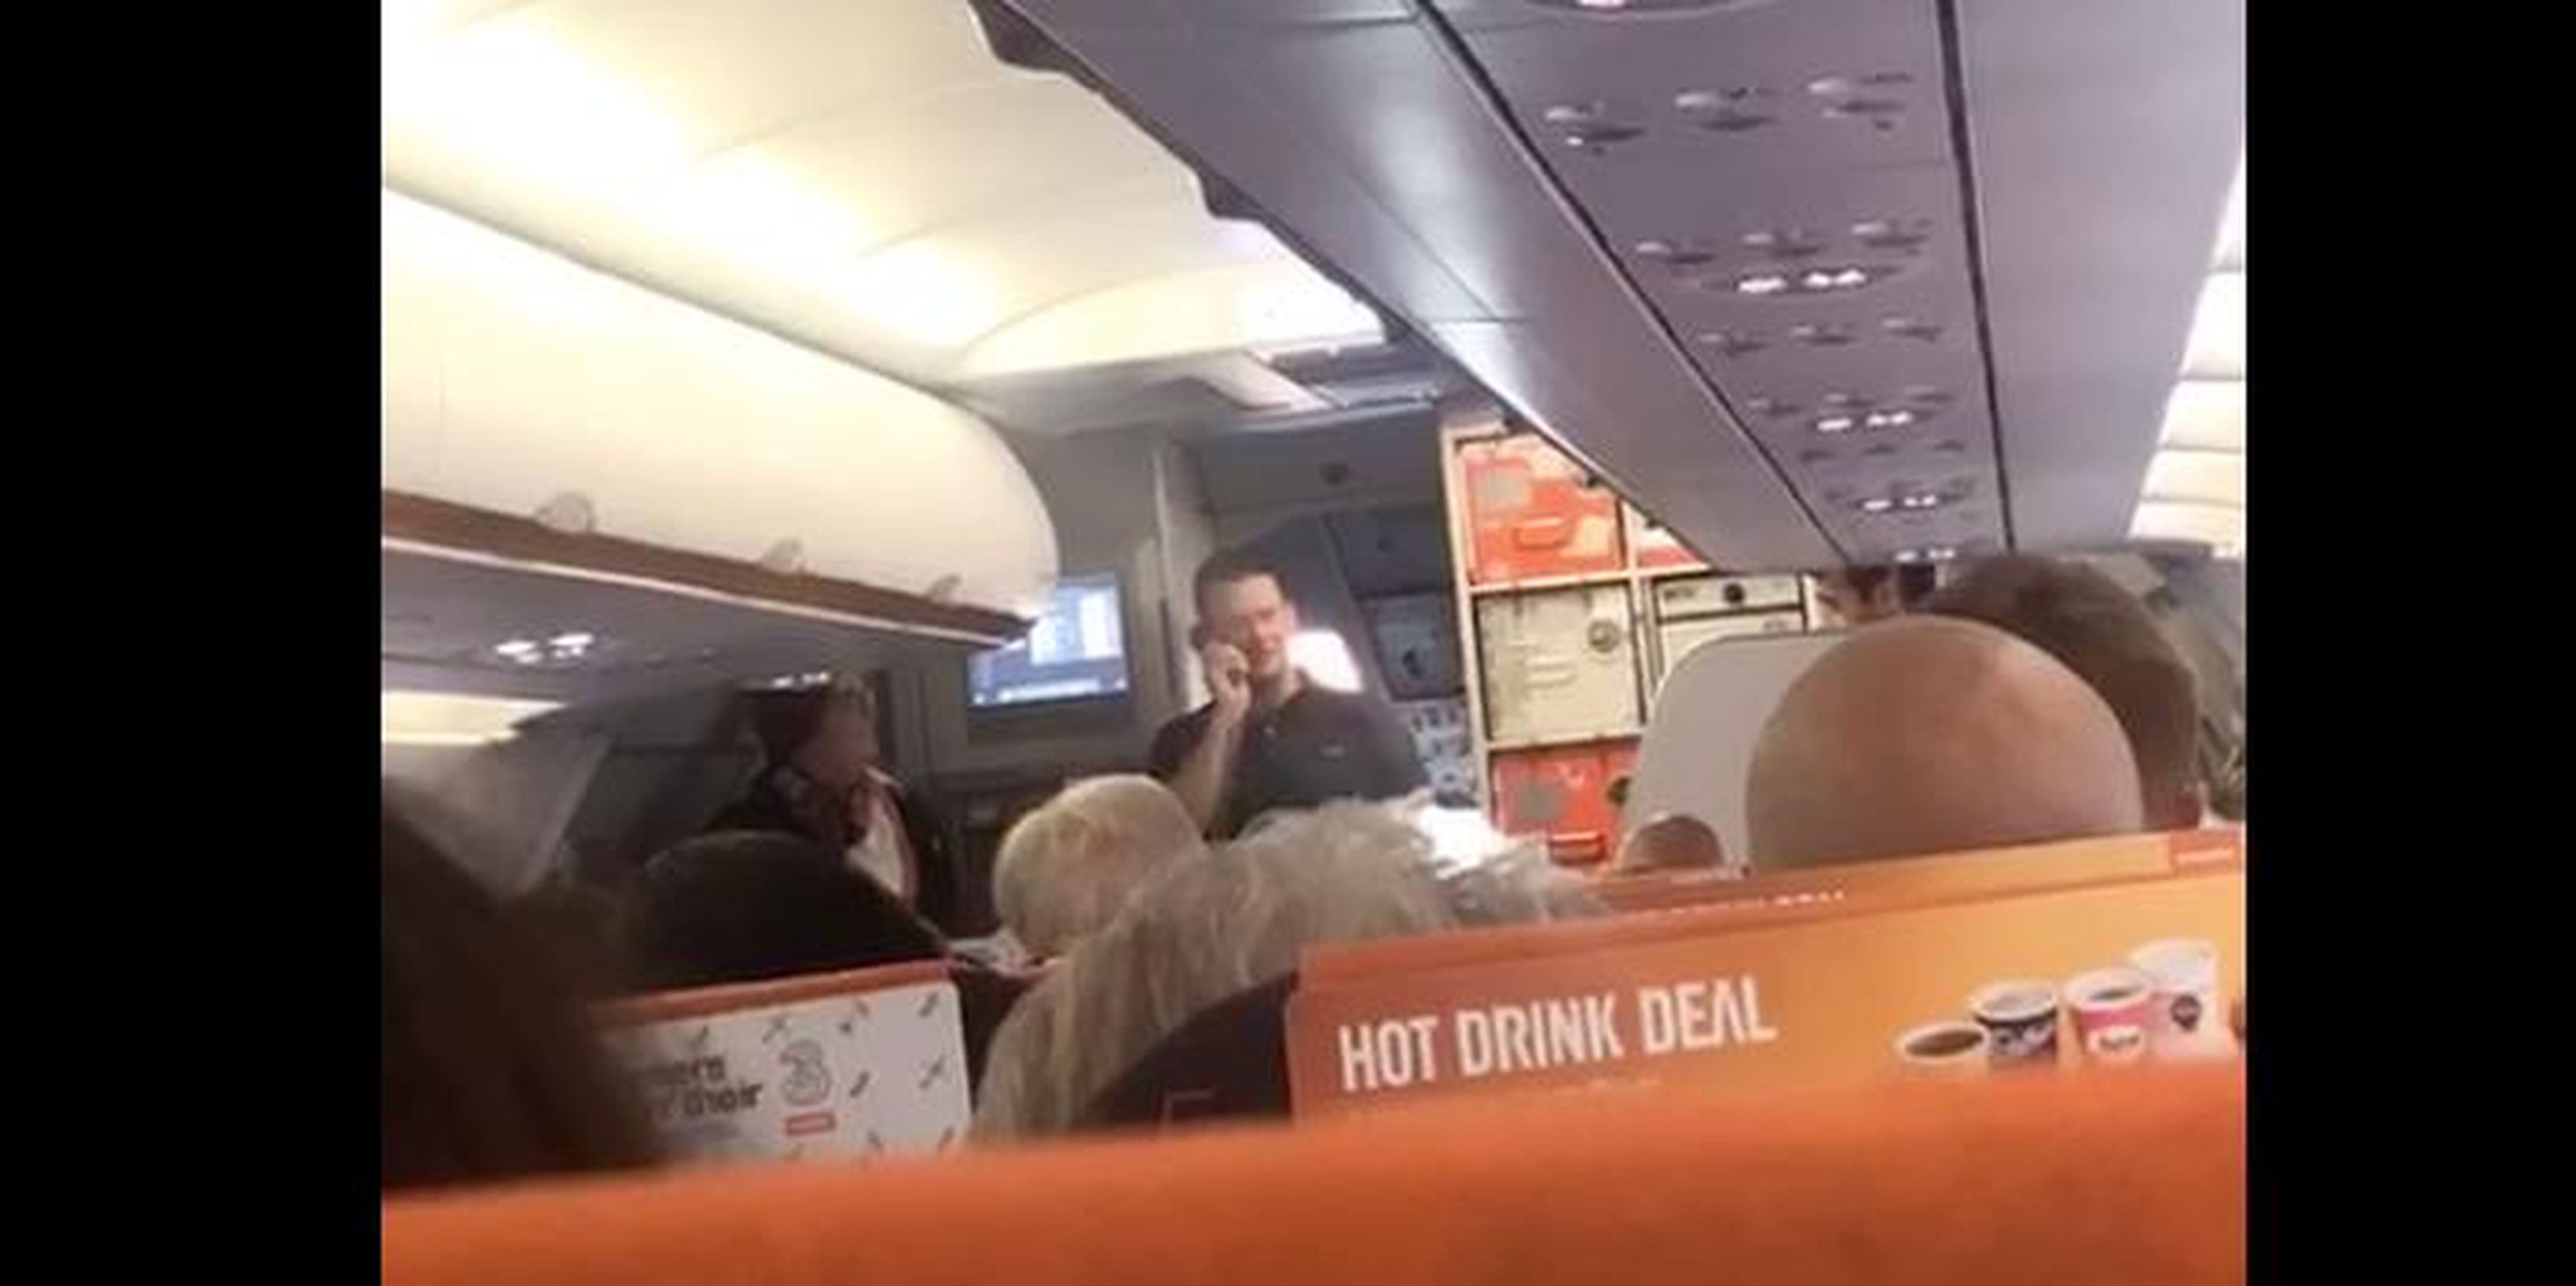 Un vídeo publicado en Facebook muestra al piloto de EasyJet, Michael Bradley, que empezaba sus vacaciones, que él pilotaría el avión.